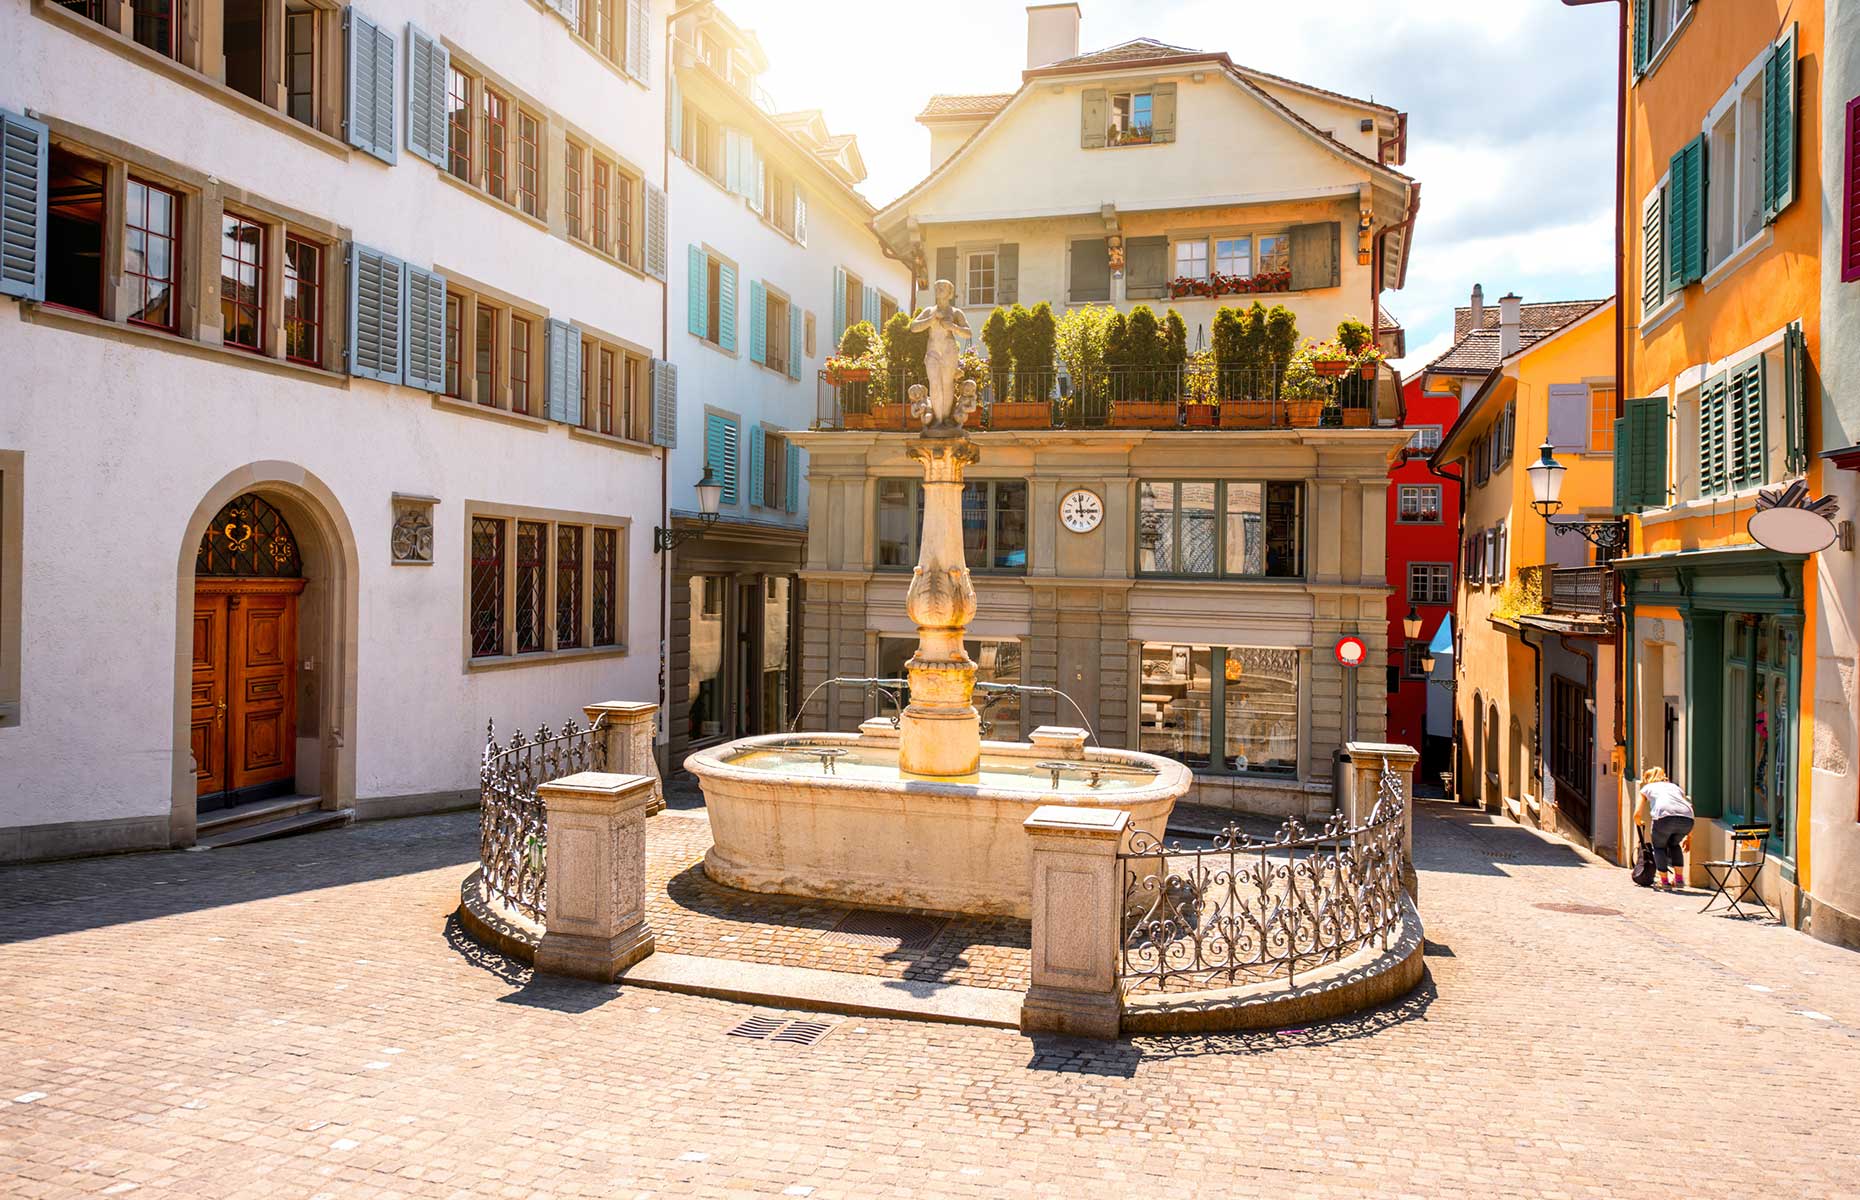 Zurich's old town